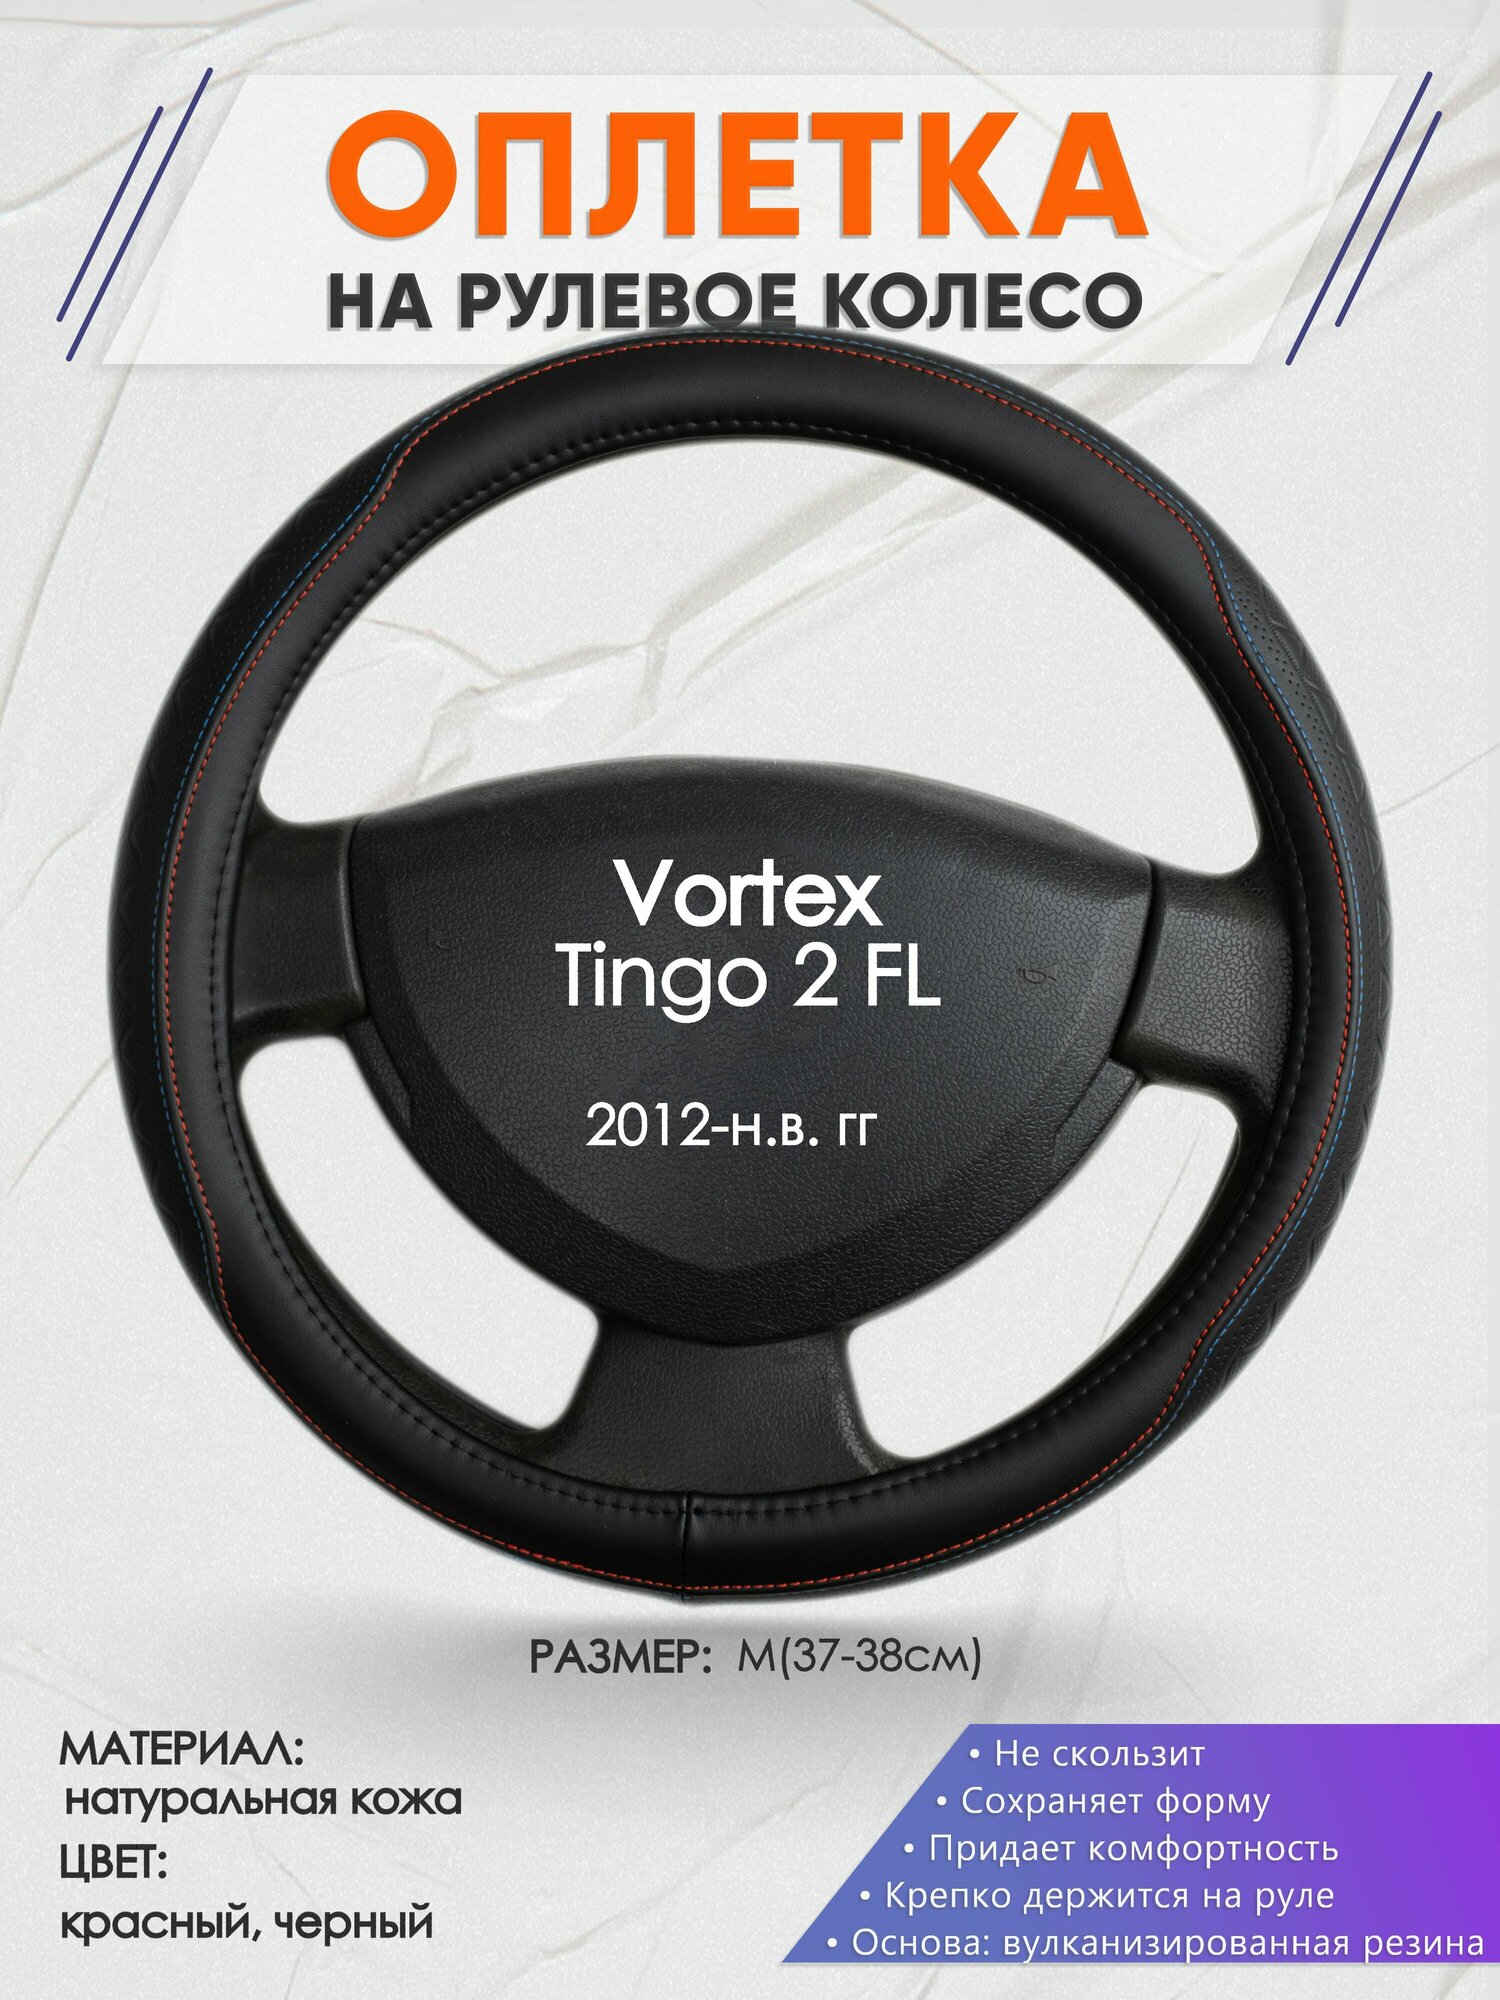 Оплетка на руль для Vortex Tingo 2 FL(Вортекс Тинго) 2012-н. в, M(37-38см), Натуральная кожа 89